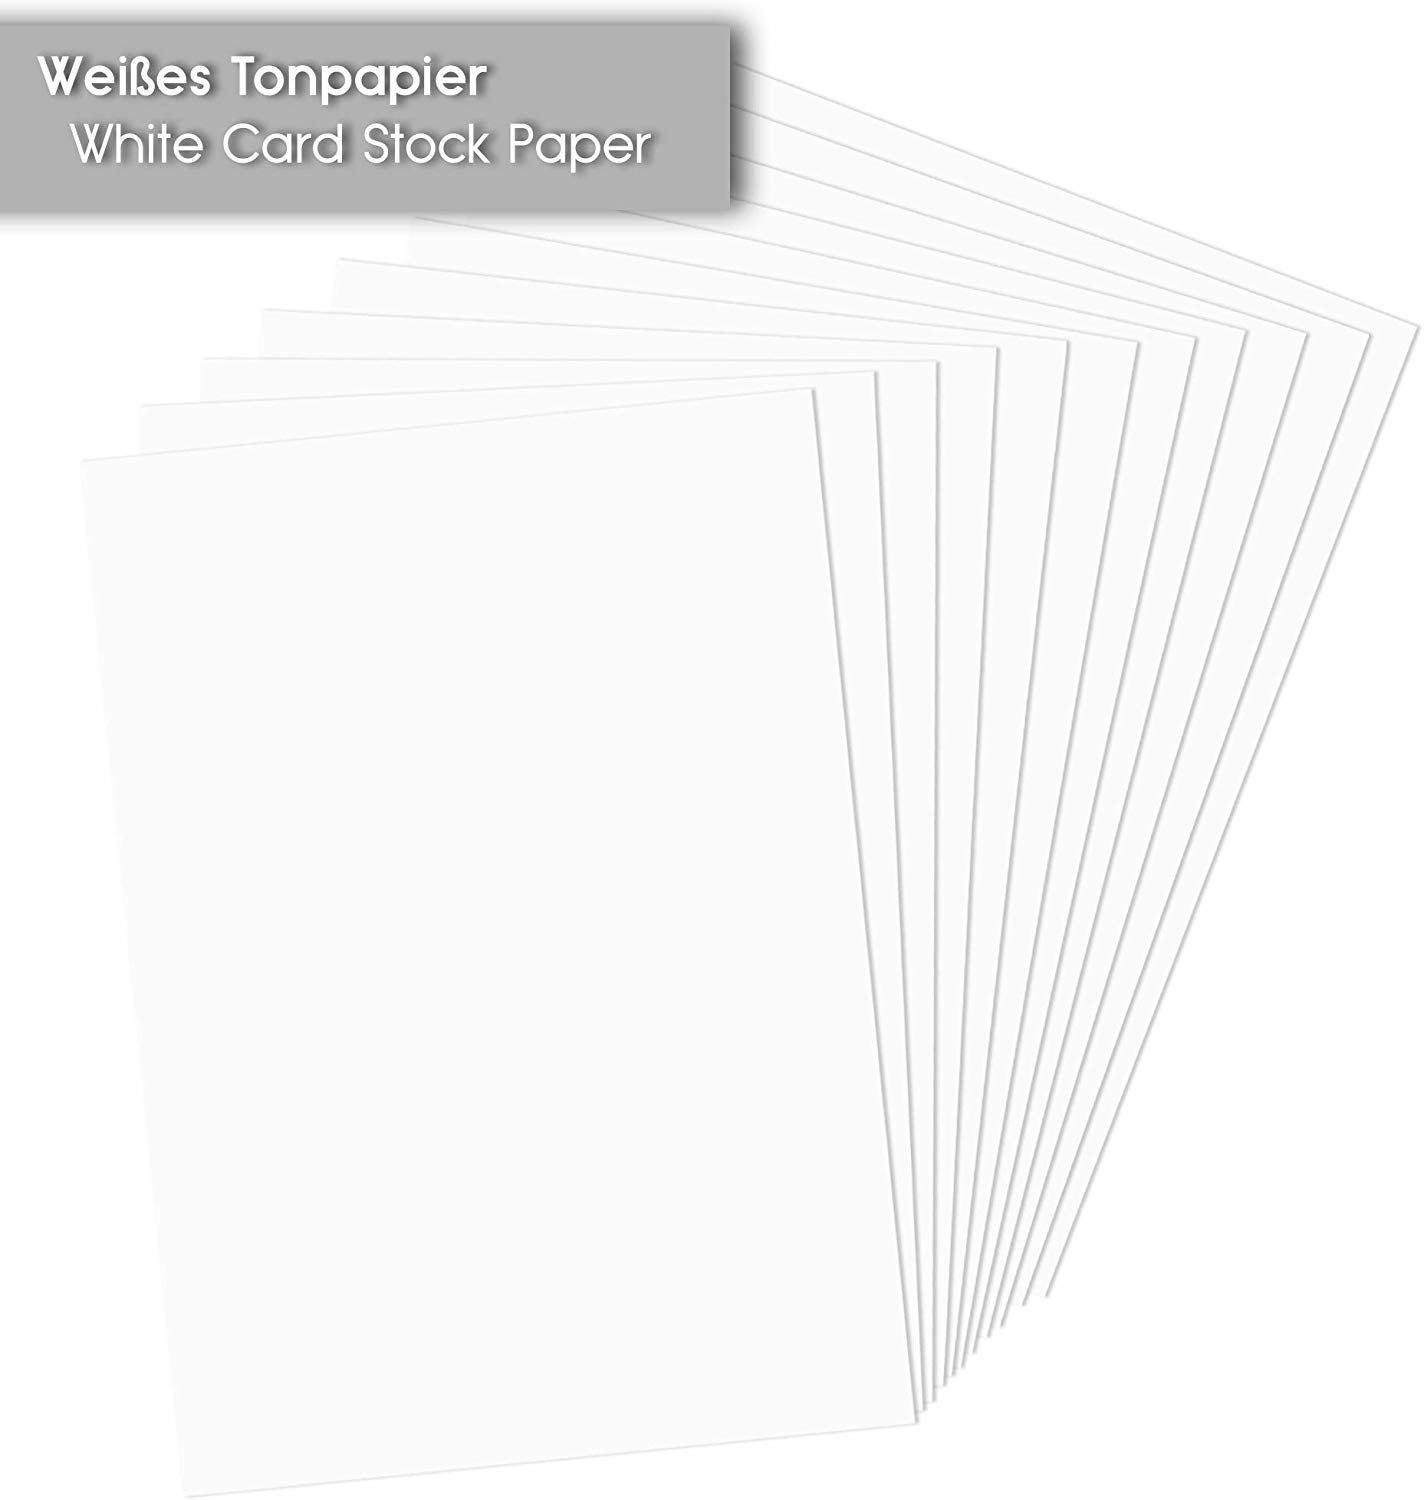 Tritart Aquarellpapier Hochwertiges Kartonpapier - Weißes - 110 Bastelpapier High-Quality White A4, Paper - Cardboard Blätter 110 Sheets - A4 Craft